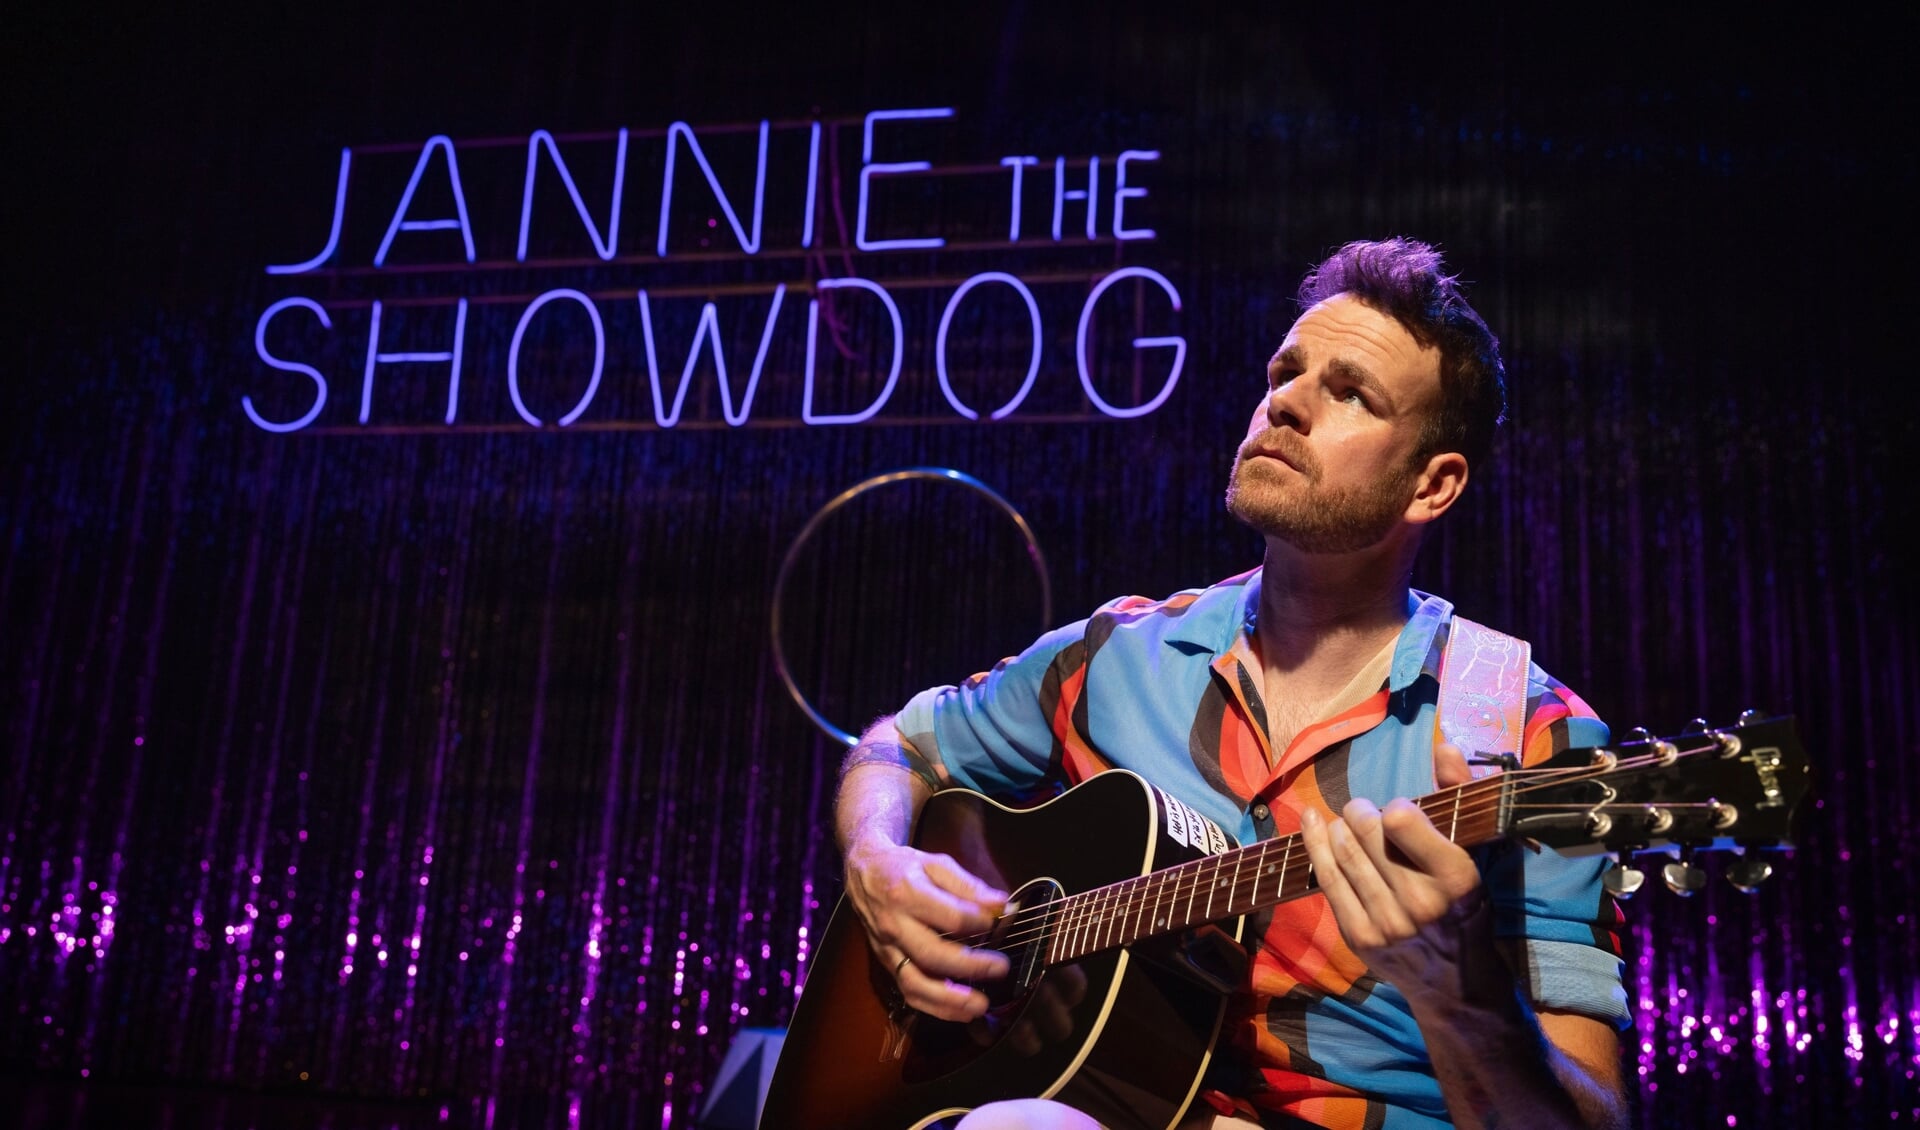 Henry van Loon staat zaterdag 8 oktober met 'Jannie the snowdog' in De Hofnar. De voorstelling is al bijna uitverkocht. 